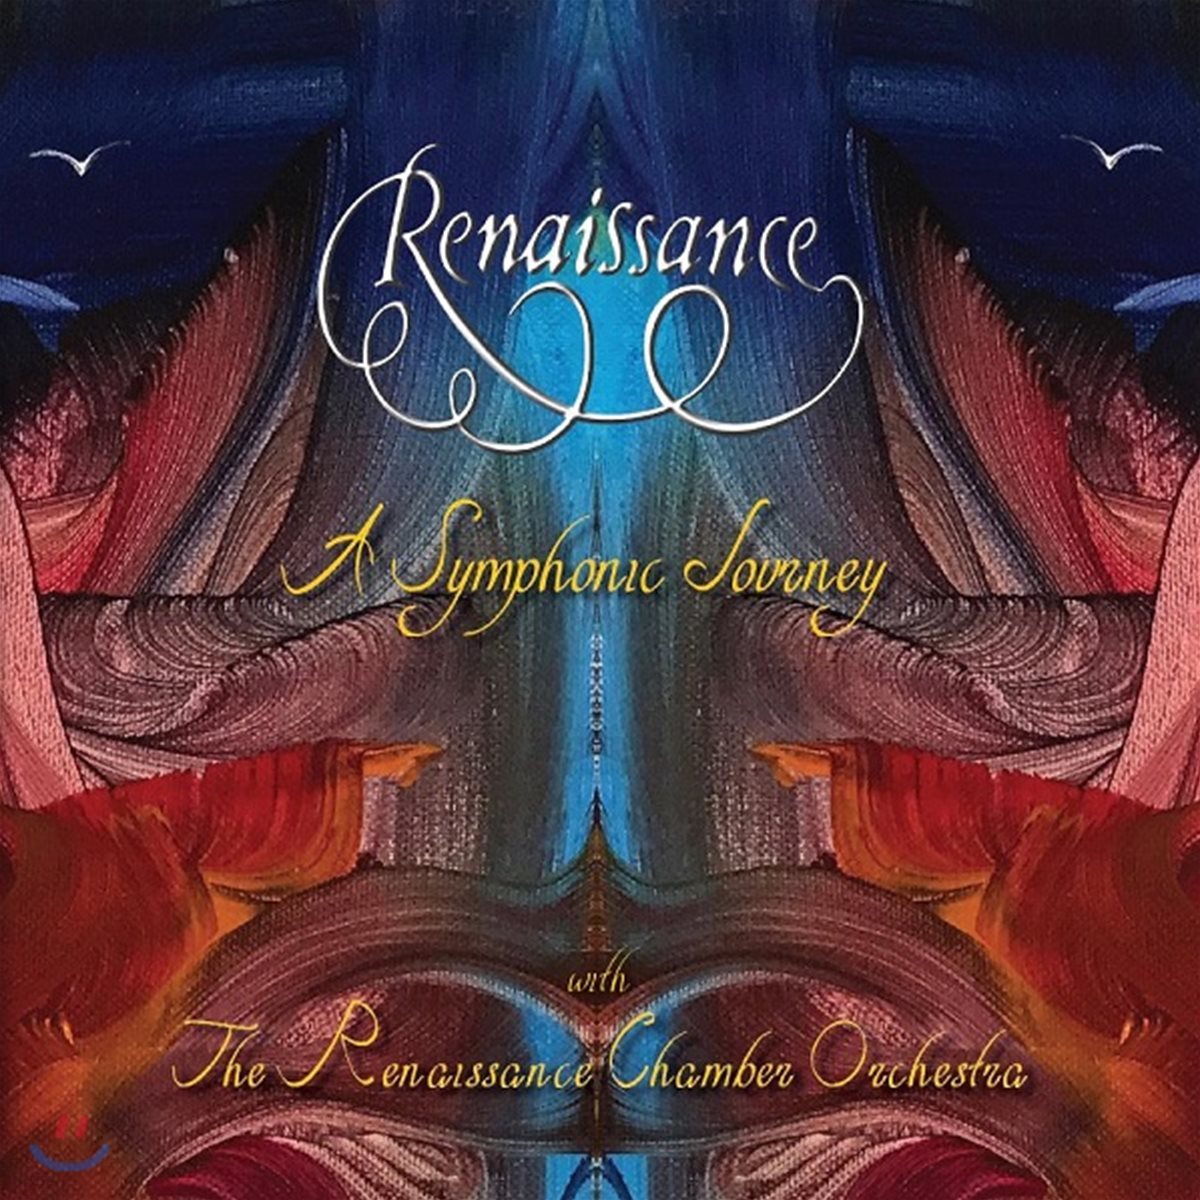 Renaissance (르네상스) - A Symphonic Journey [2CD+1DVD]